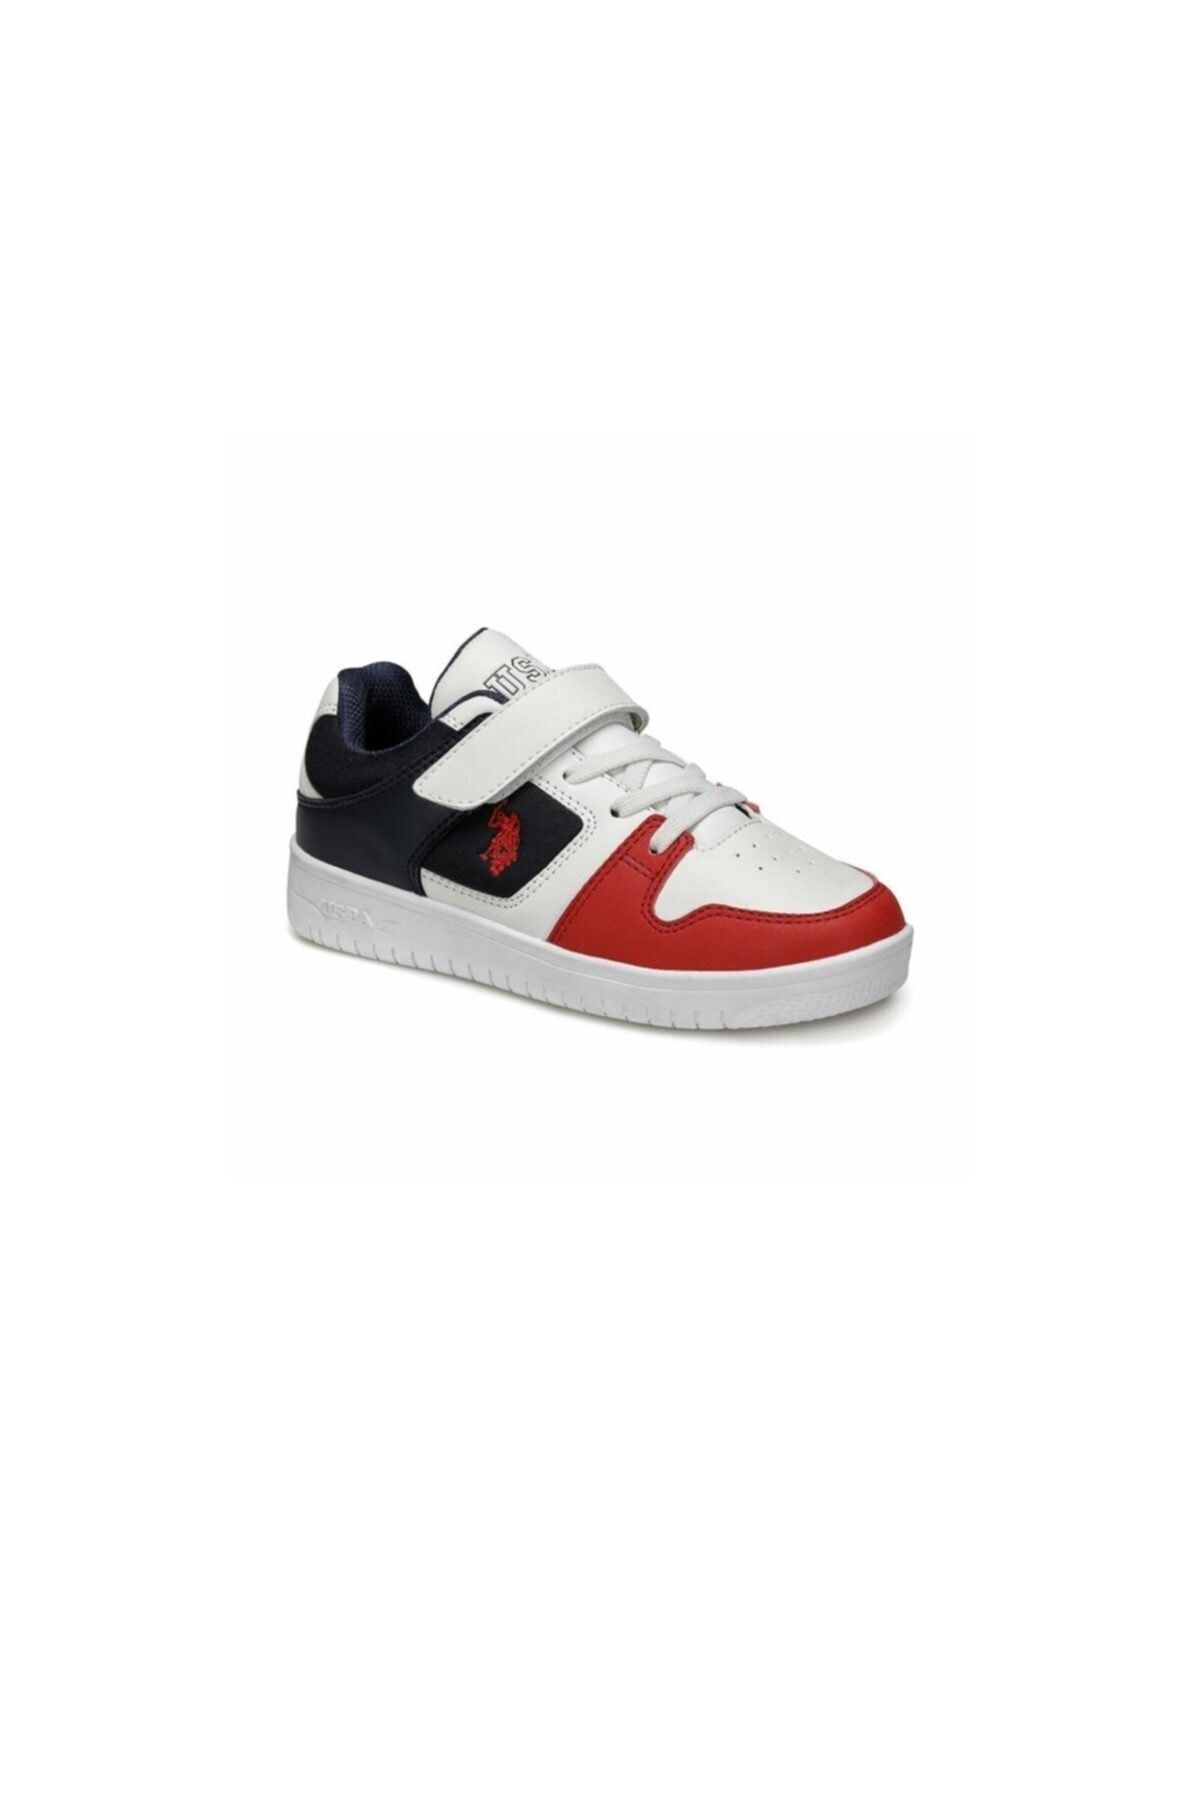 U.S. Polo Assn. DOUGLAS Beyaz Erkek Çocuk Sneaker Ayakkabı 100489475